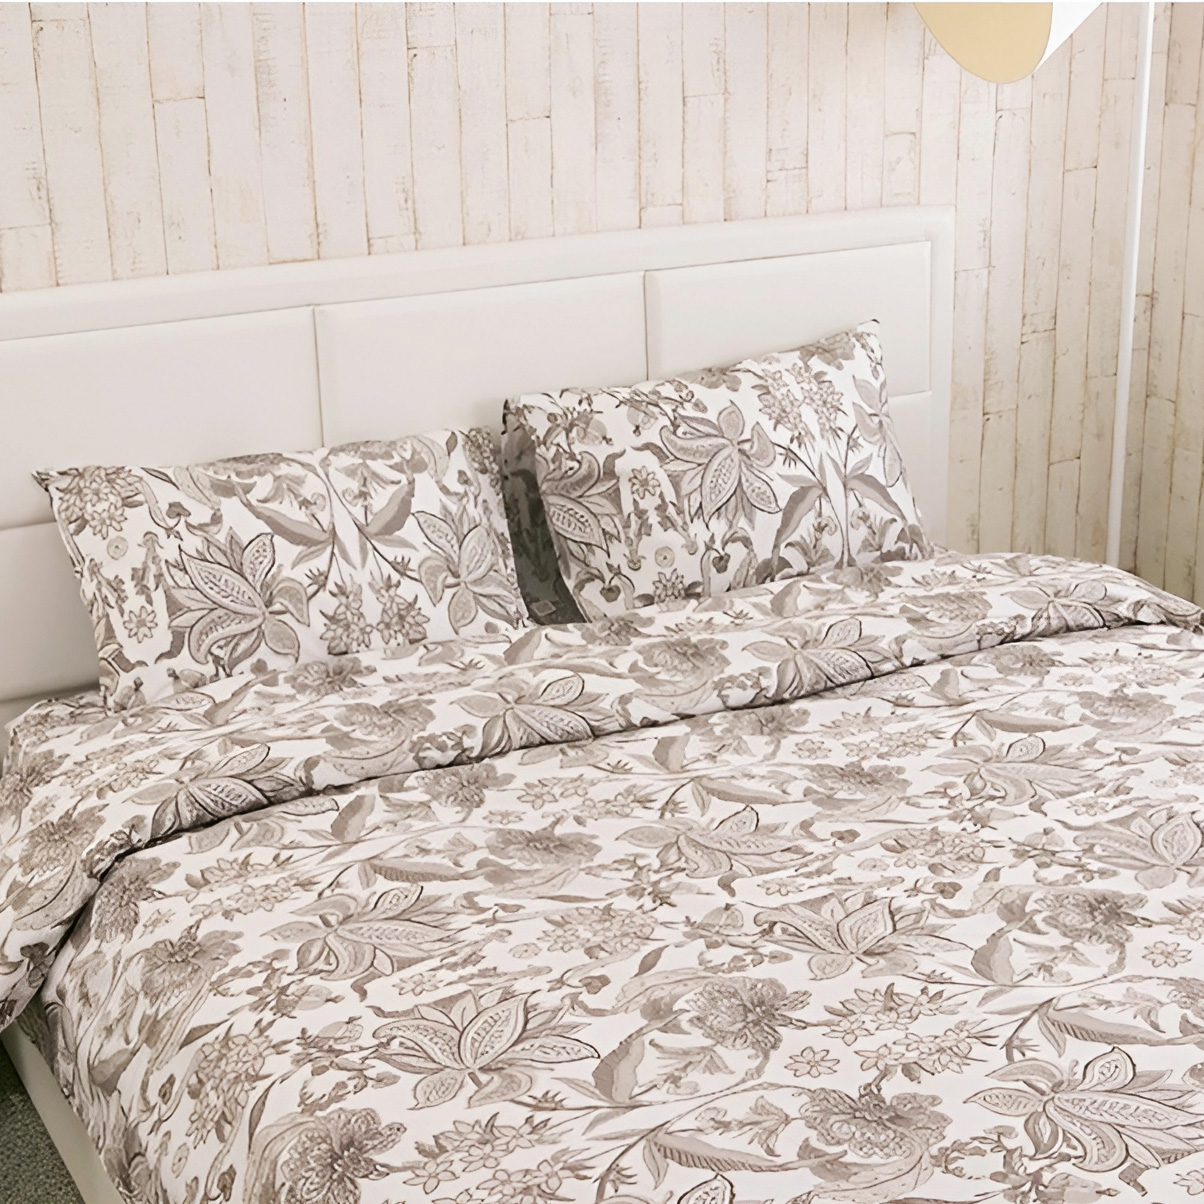 Комплект постельного белья Руно Luxury бязь набивная полуторный бежевый (677.114_Luxury) - фото 1